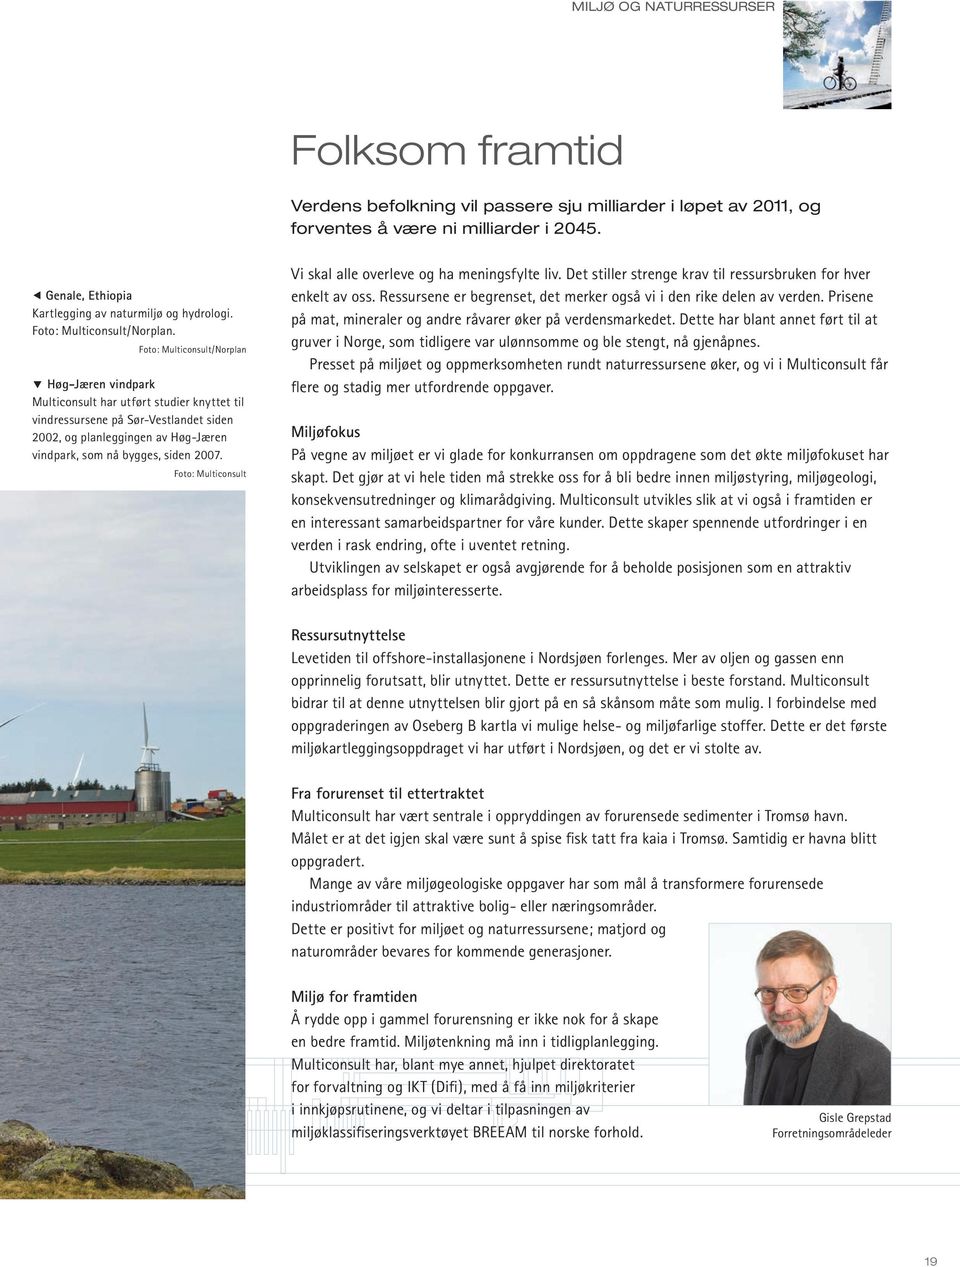 Foto: Multiconsult/Norplan Høg-Jæren vindpark Multiconsult har utført studier knyttet til vindressursene på Sør-Vestlandet siden 2002, og planleggingen av Høg-Jæren vindpark, som nå bygges, siden